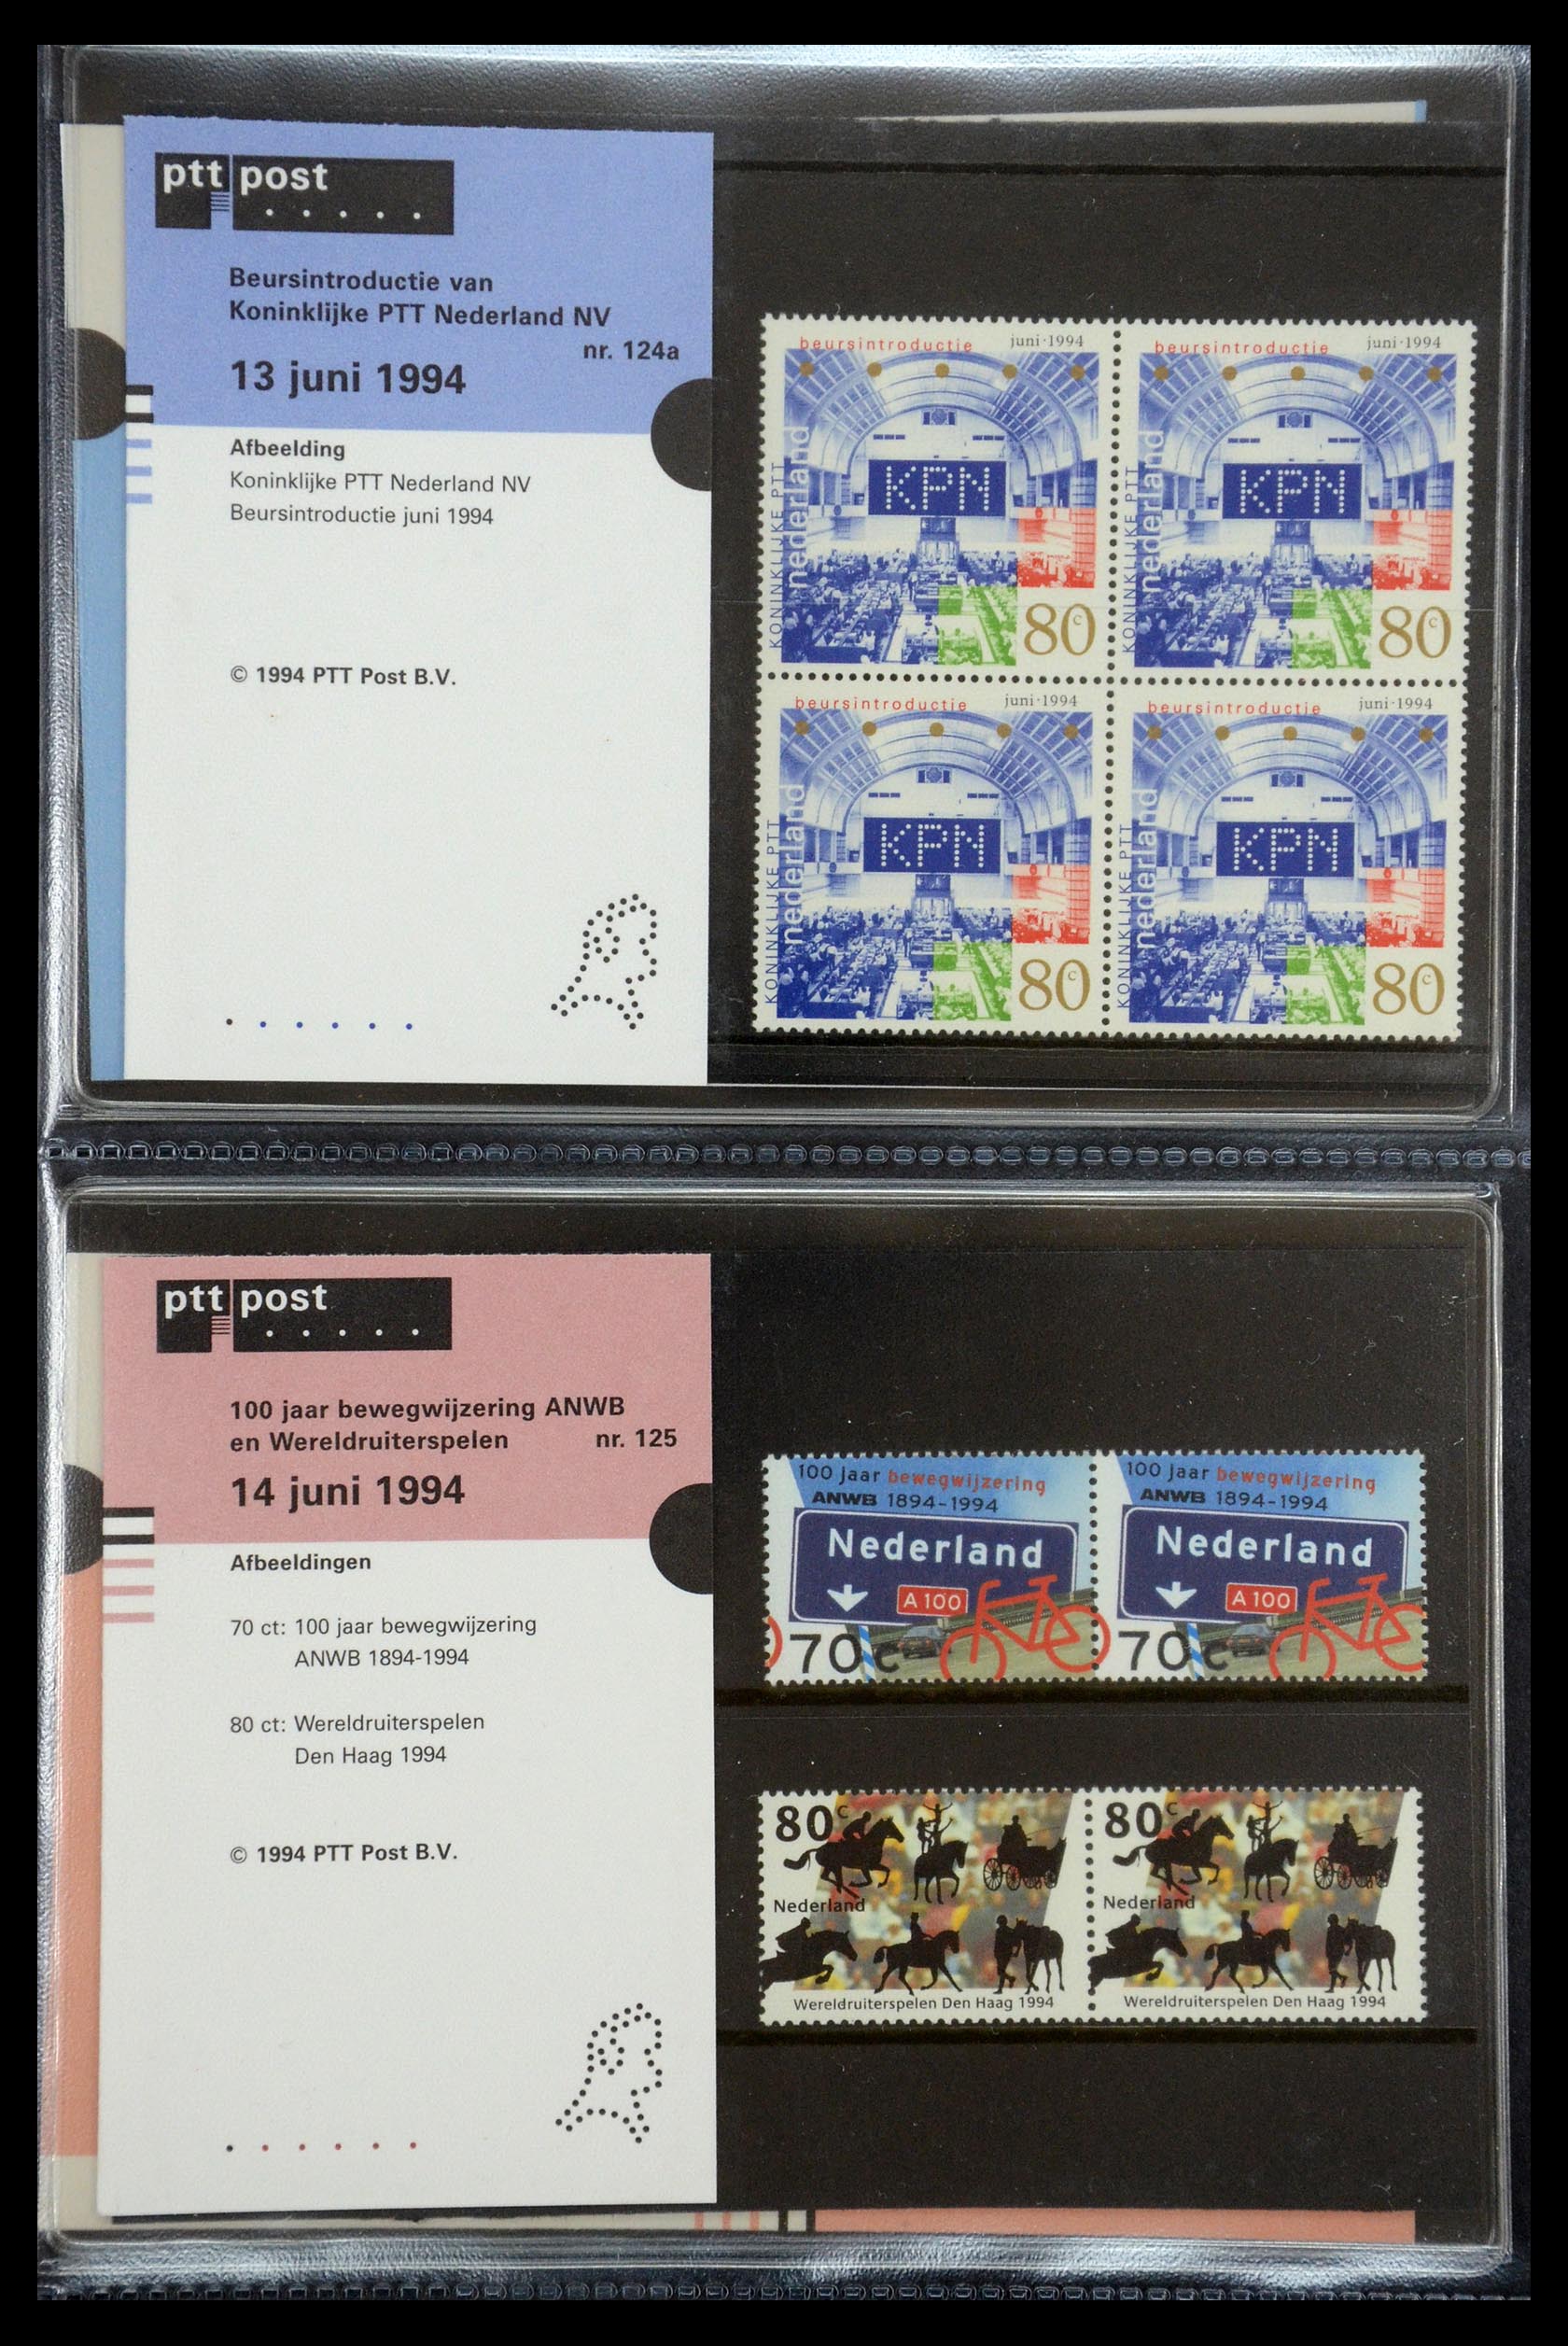 35187 064 - Stamp Collection 35187 Netherlands PTT presentation packs 1982-2019!